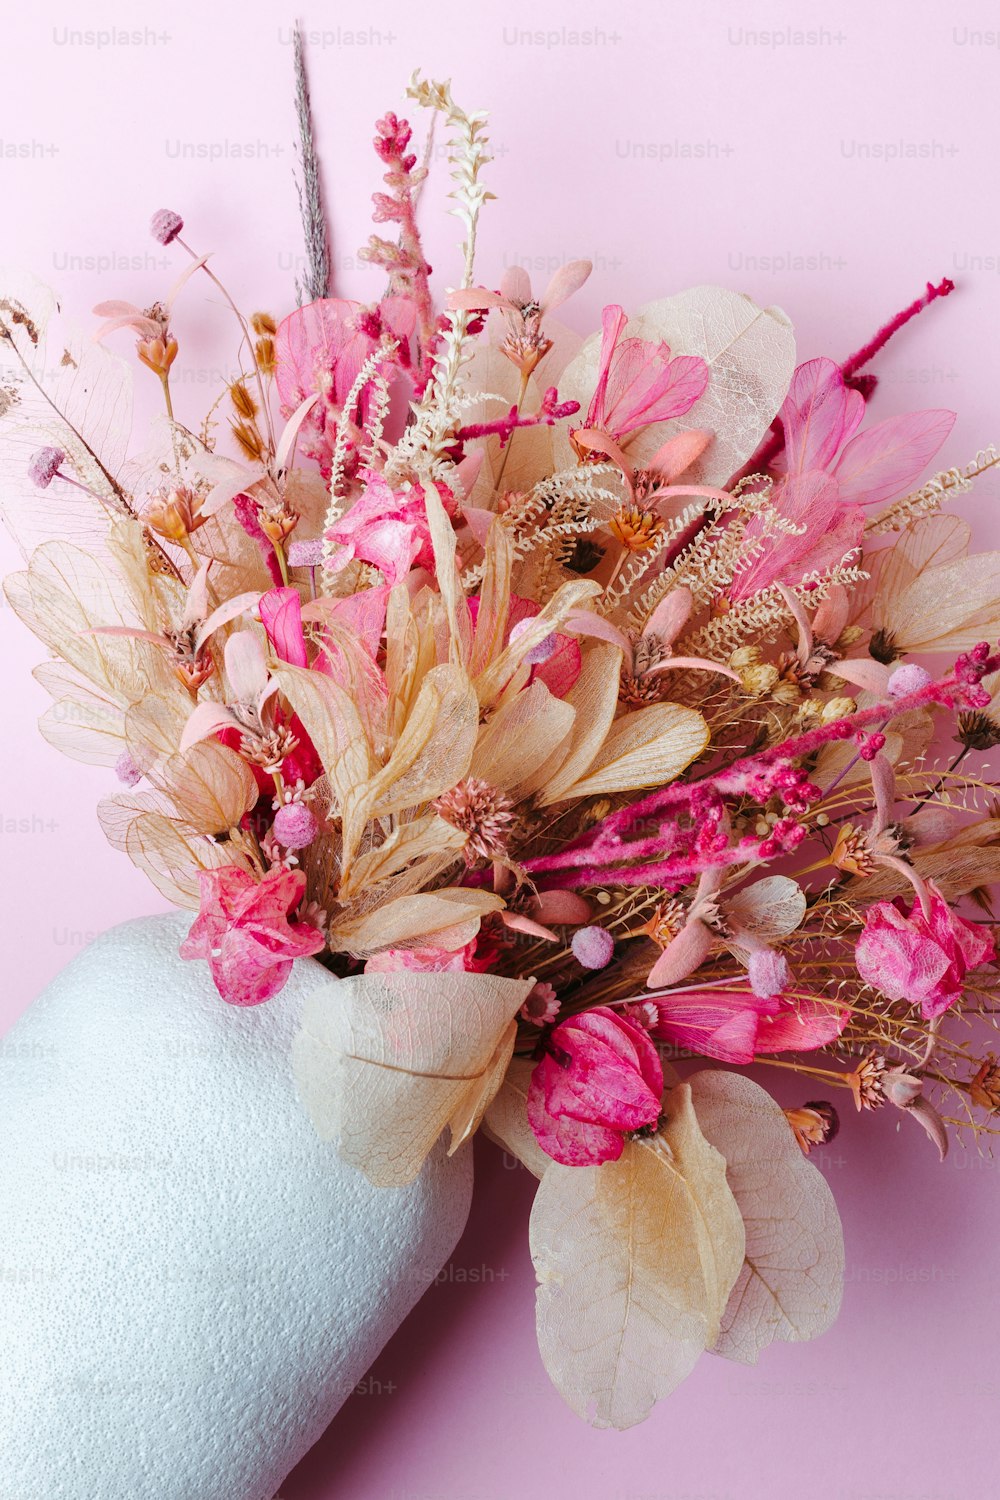 una mano sosteniendo un ramo de flores sobre un fondo rosa